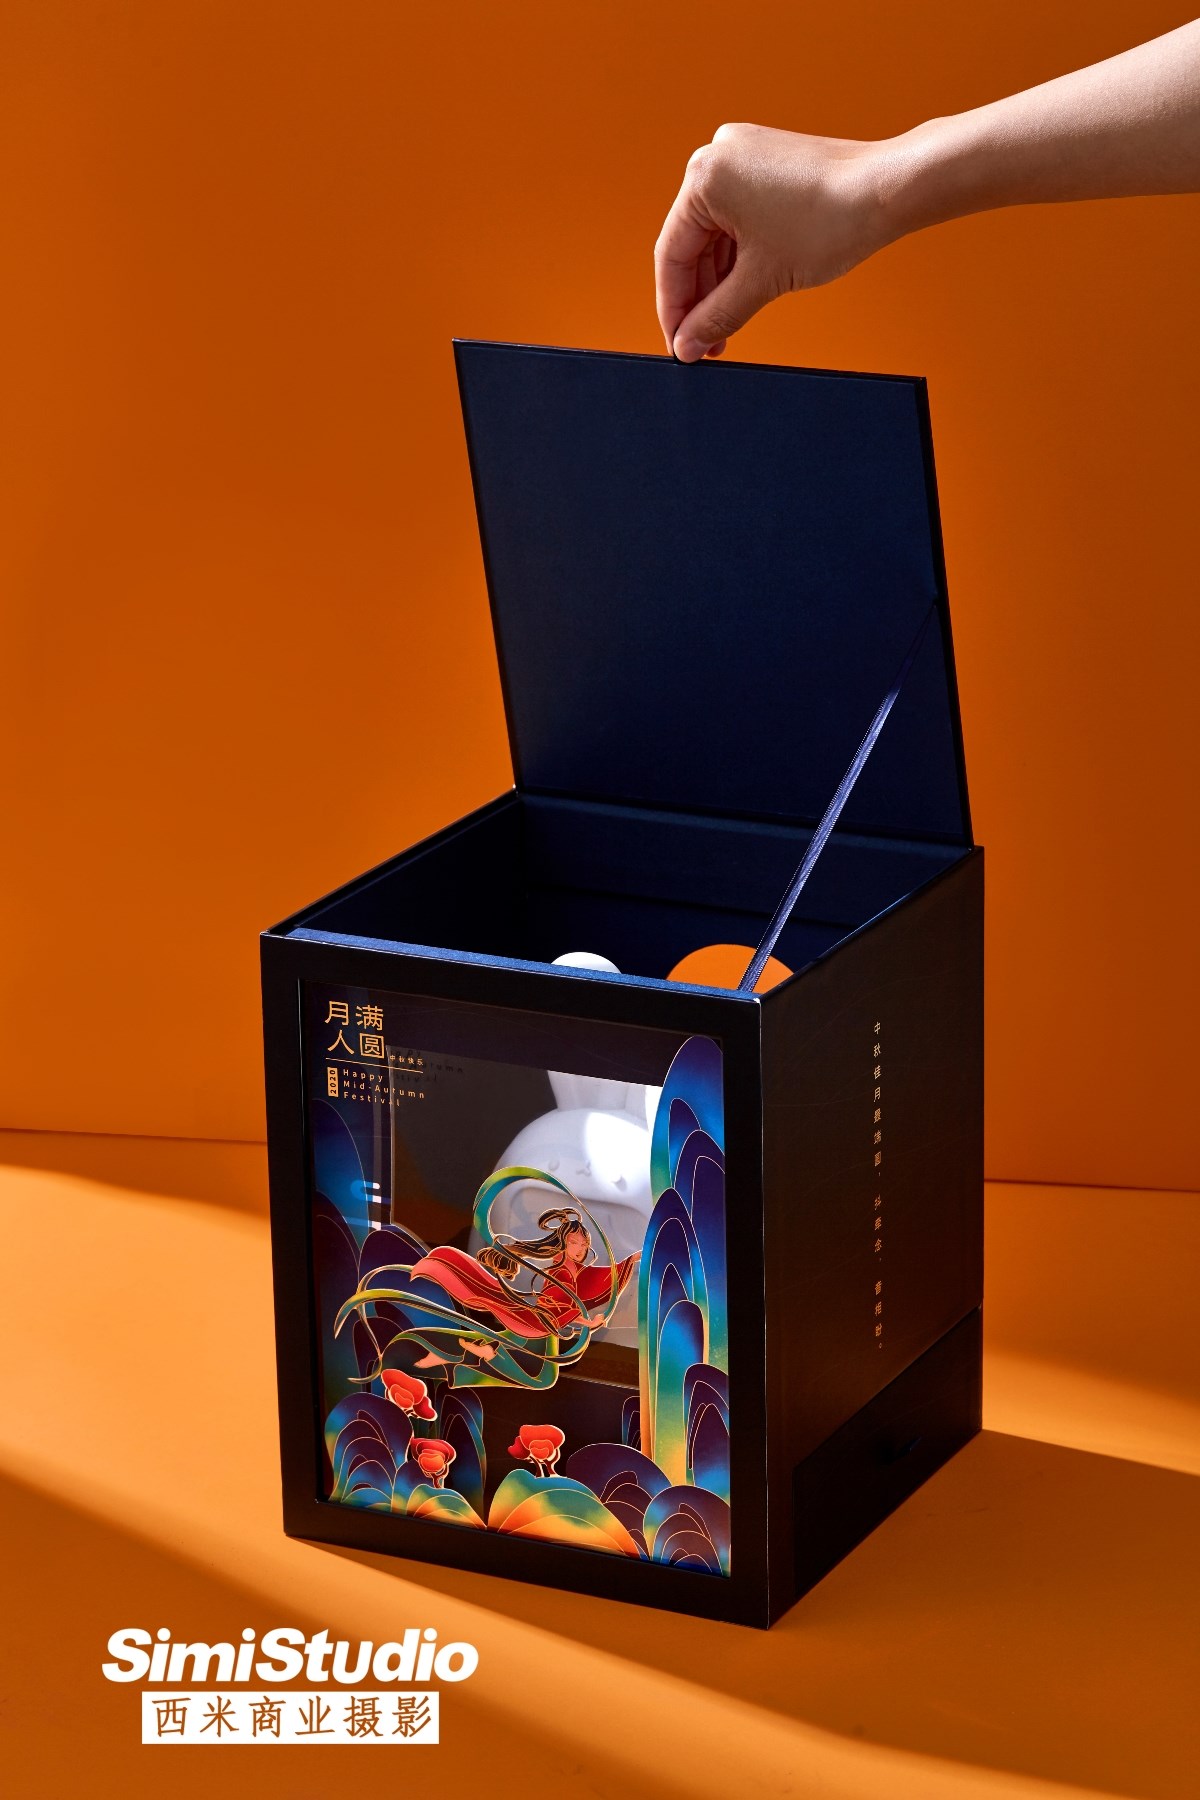 月饼礼盒拍摄 抖音文创 产品摄影 电商摄影 北京西米商业摄影